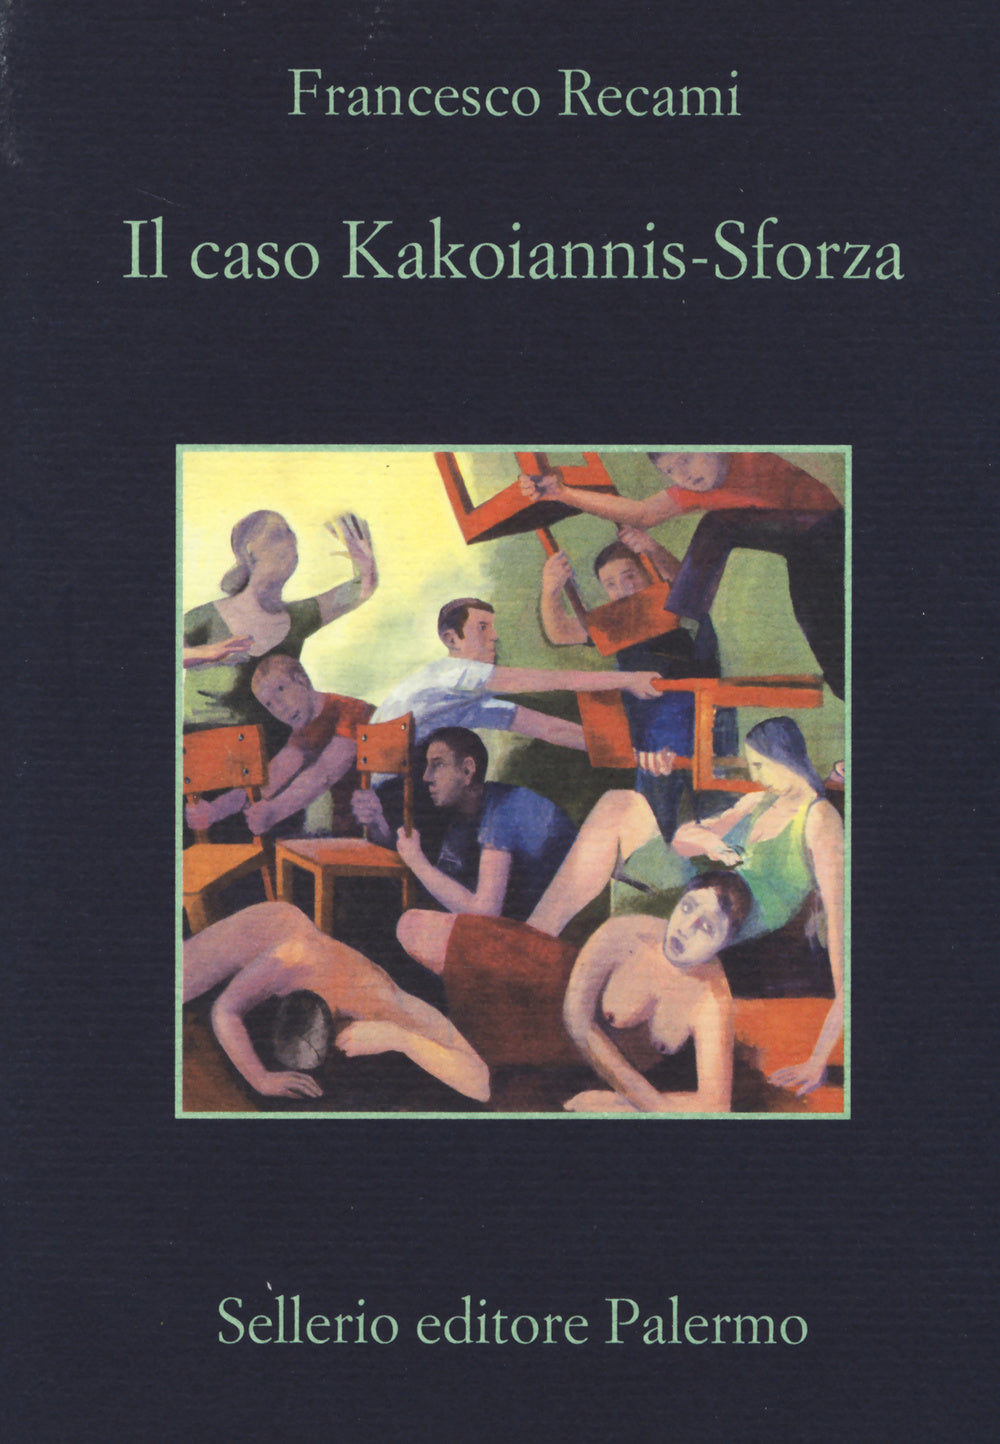 Il caso Kakoiannis-Sforza.